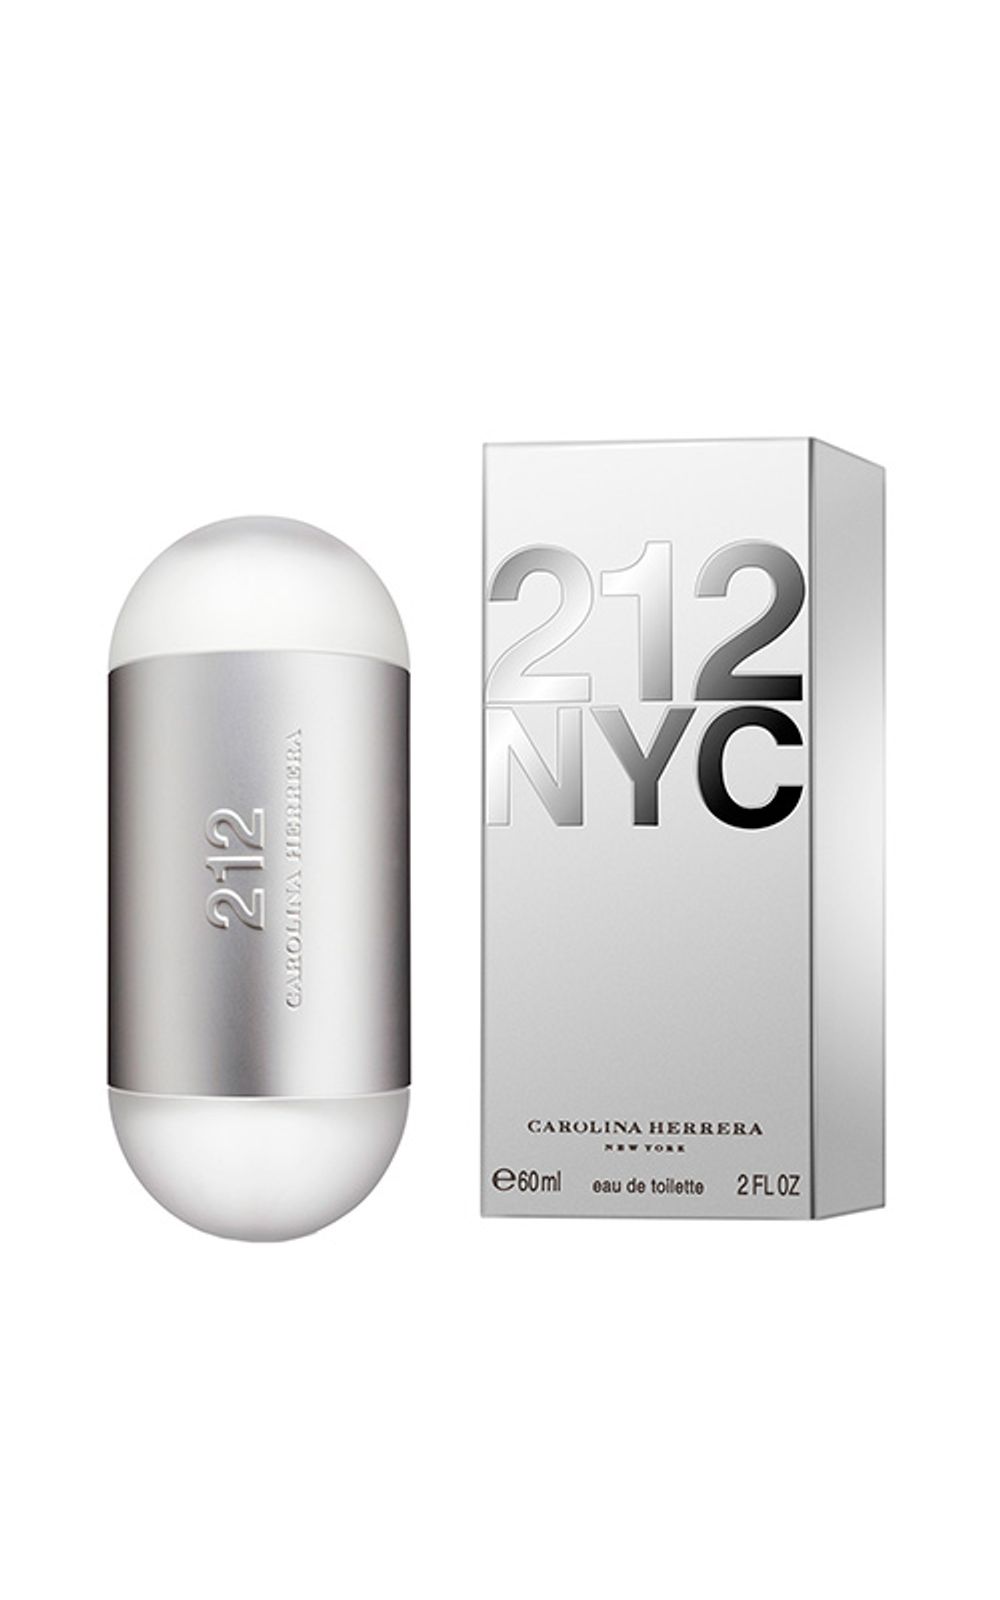 Foto 2 - 212 NYC Carolina Herrera - Perfume Feminino - Eau de Toilette - 60ml